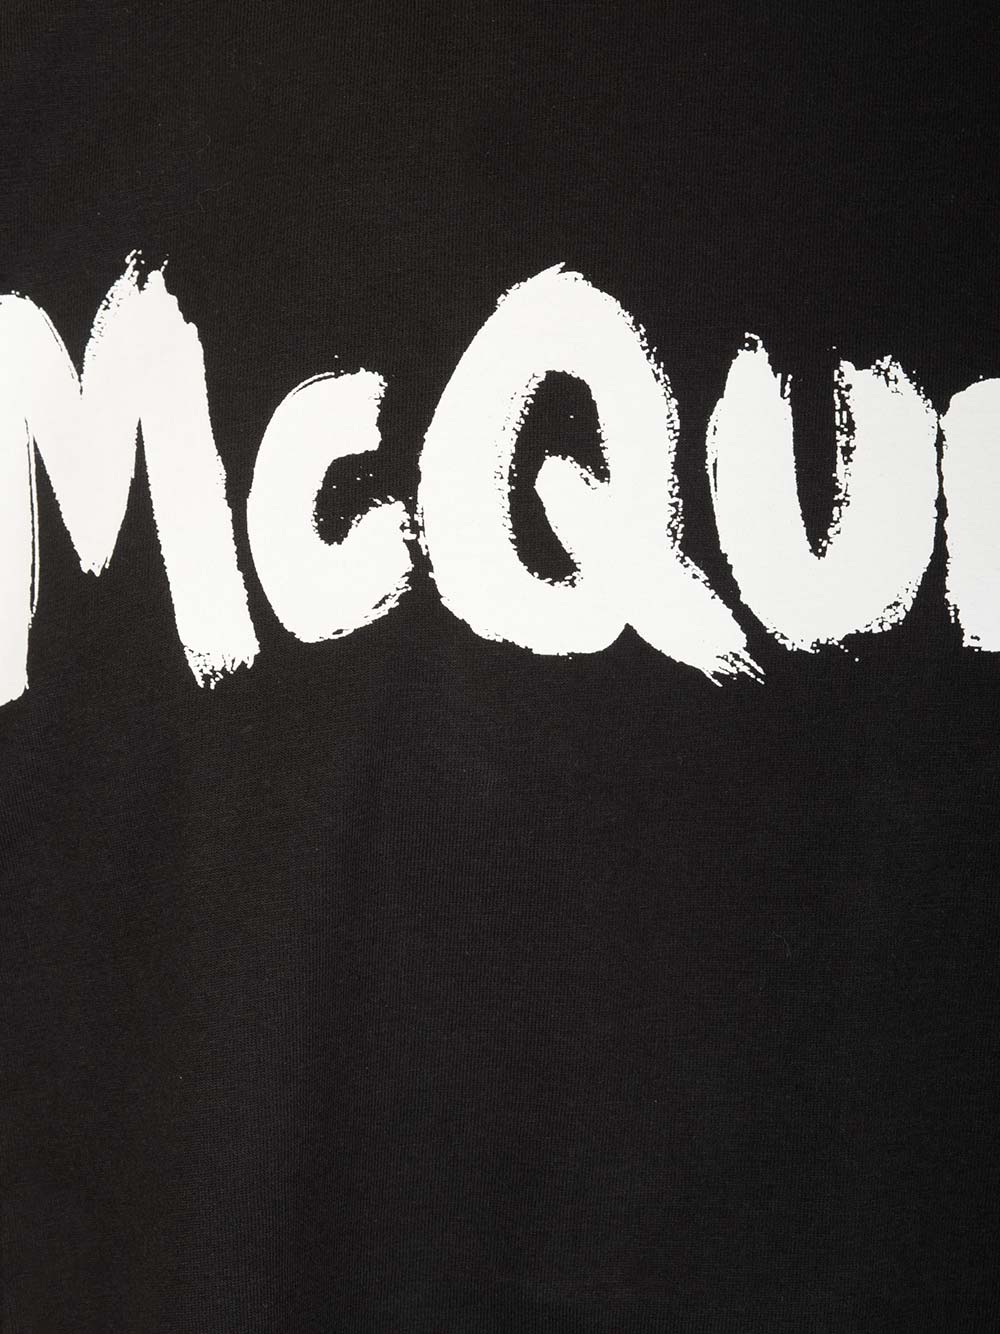 Shop Alexander Mcqueen Black Graffiti T-shirt